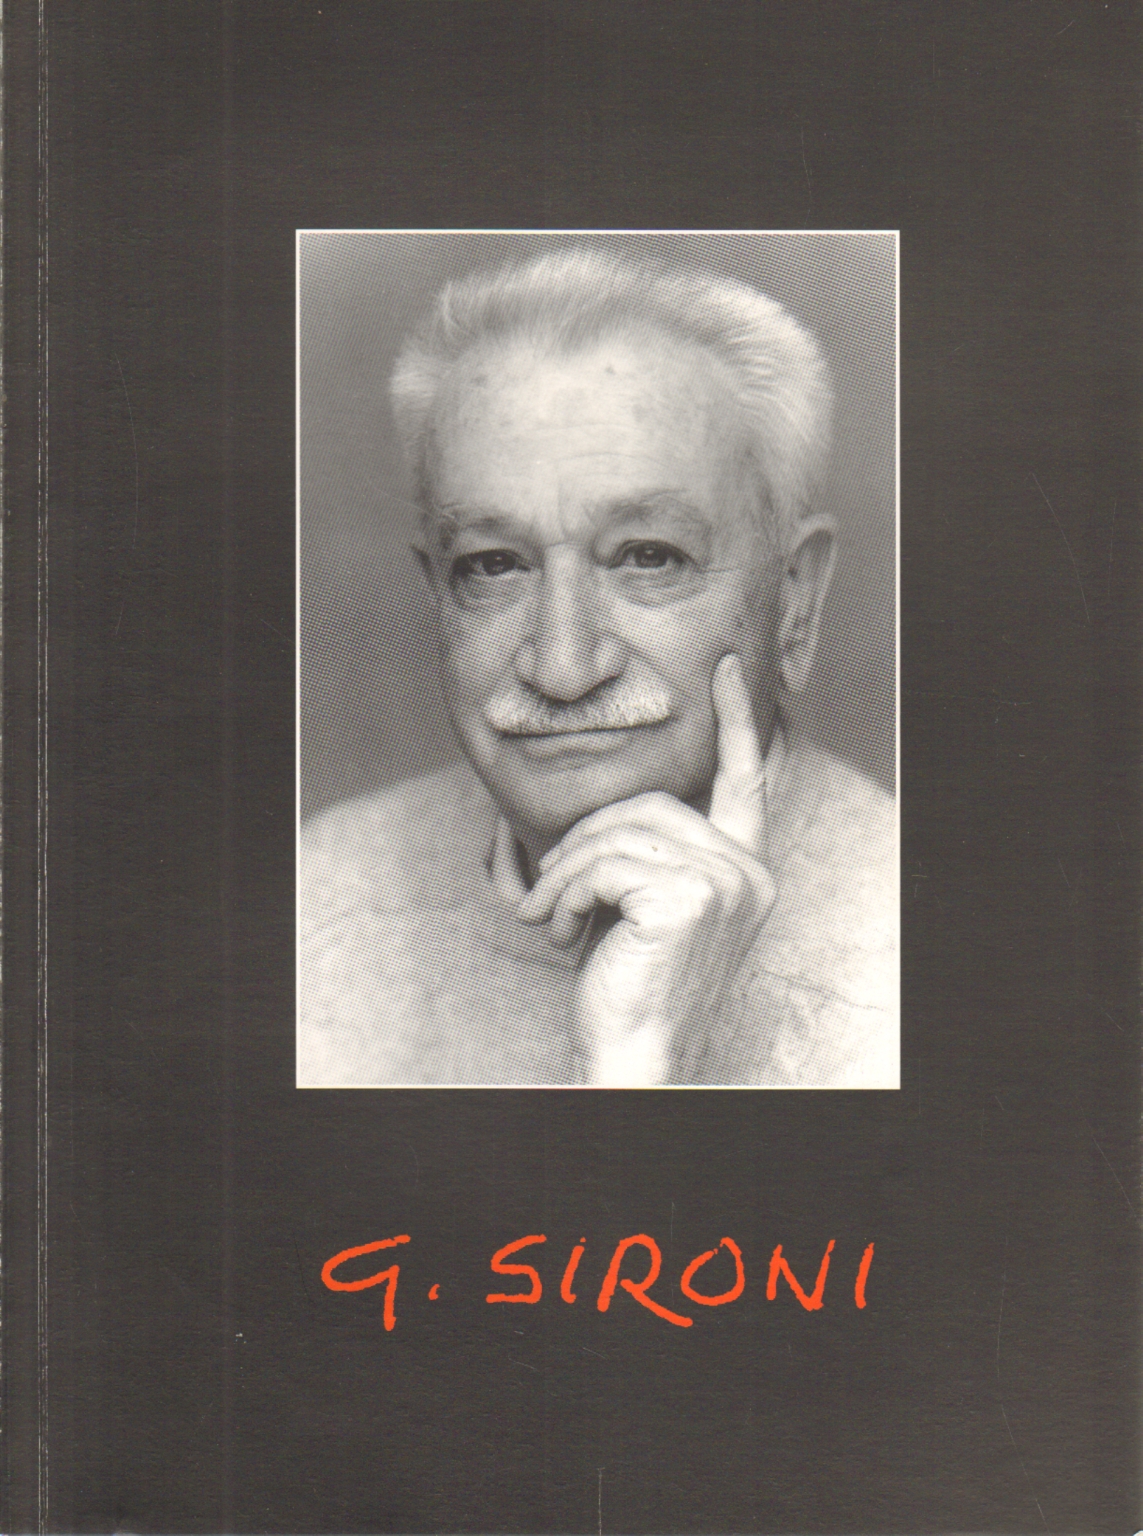 Gino Sironi 1912-1999, Annamaria Sironi